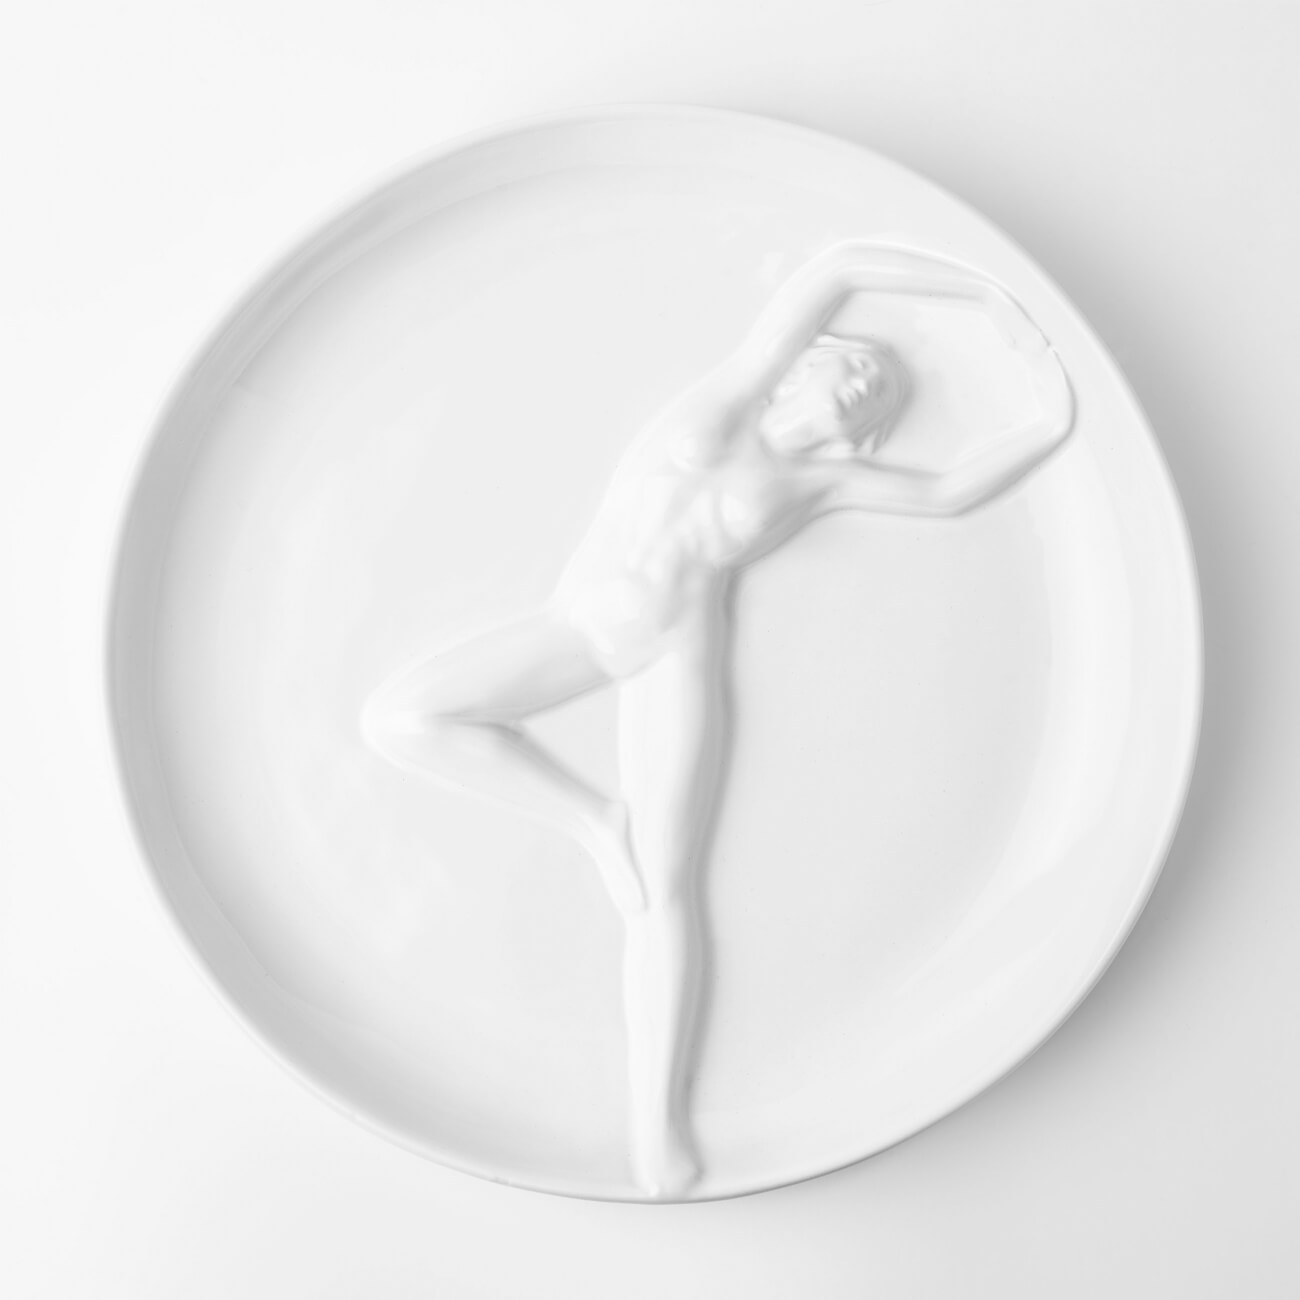 Блюдо, 24 см, керамика, белое, Женщина, Face блюдо 22 см керамика белое лицо face